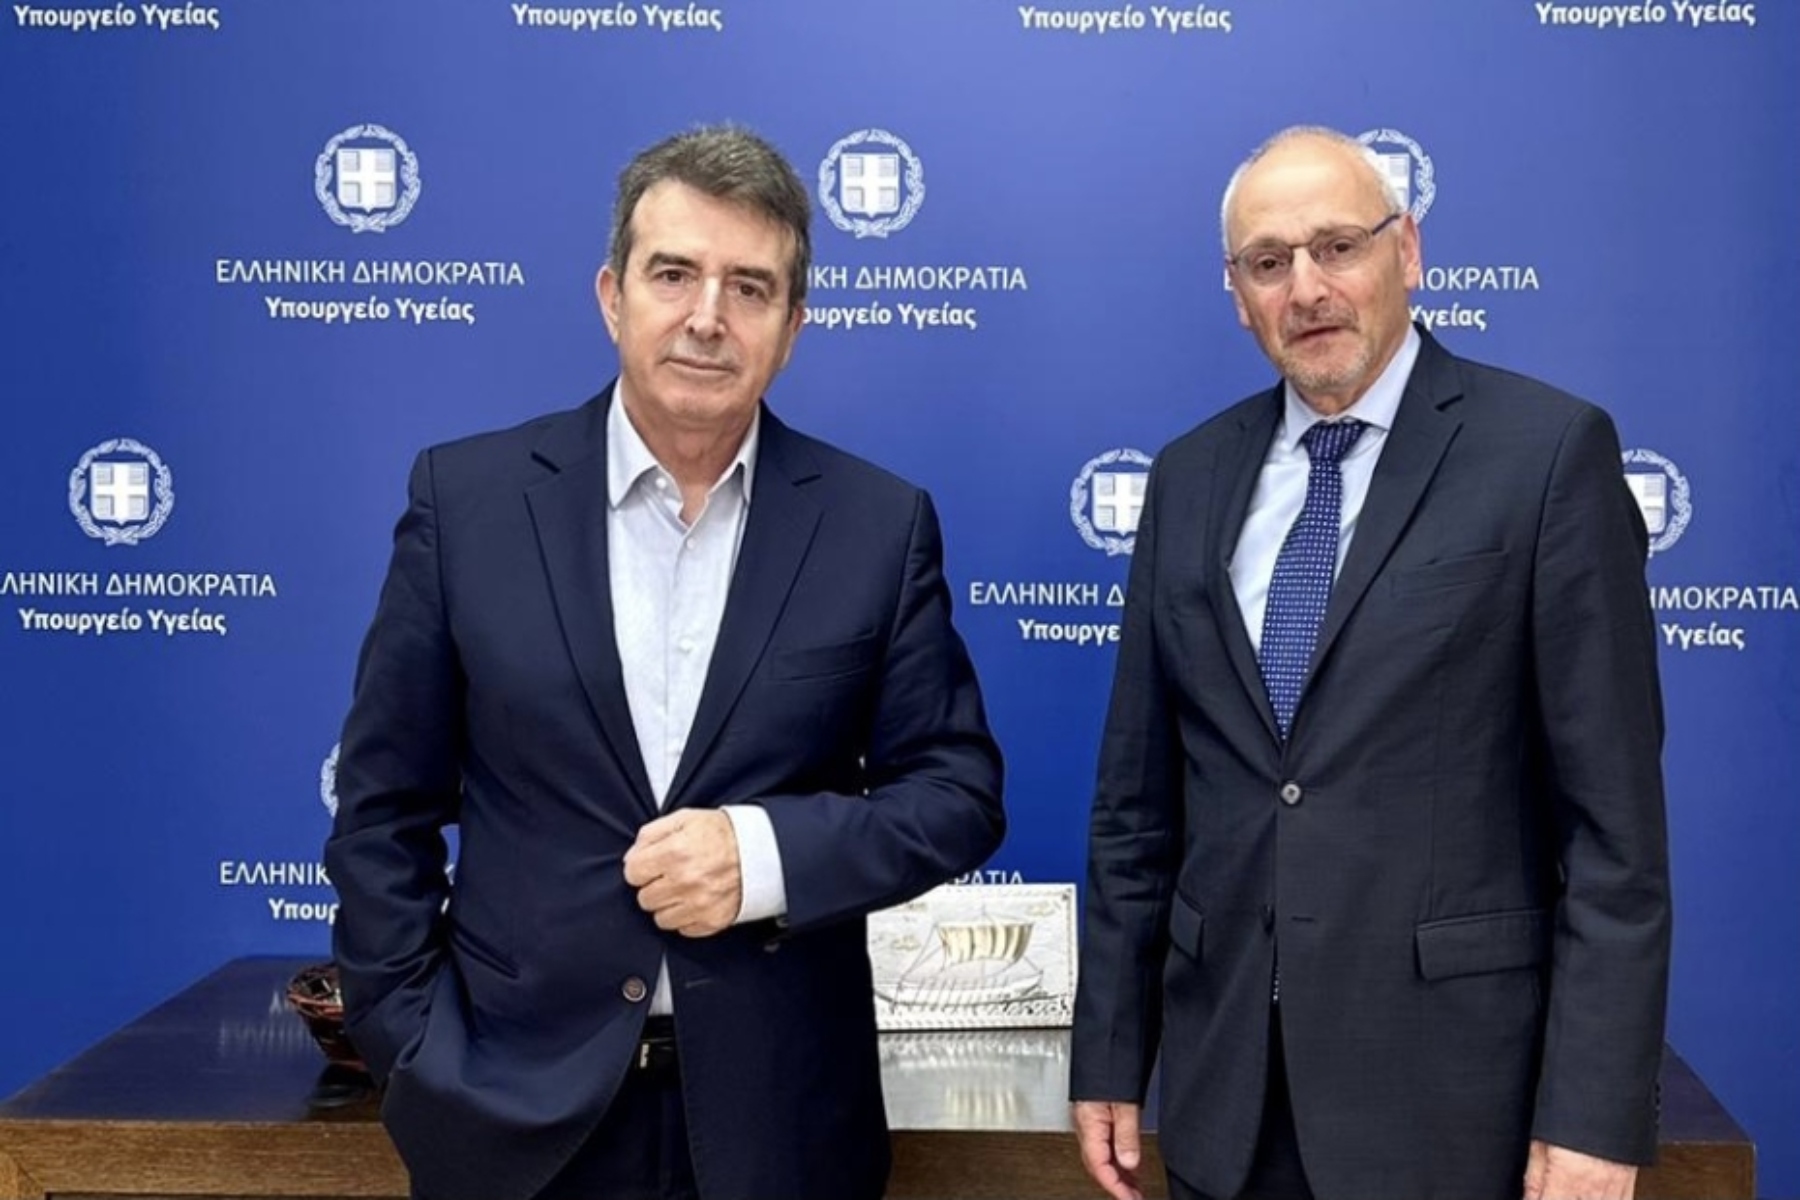 Μιχάλης Χρυσοχοΐδης: Συνάντηση του Υπουργού Υγείας με τον Πρέσβη του Ισραήλ, Νόαμ Κατς